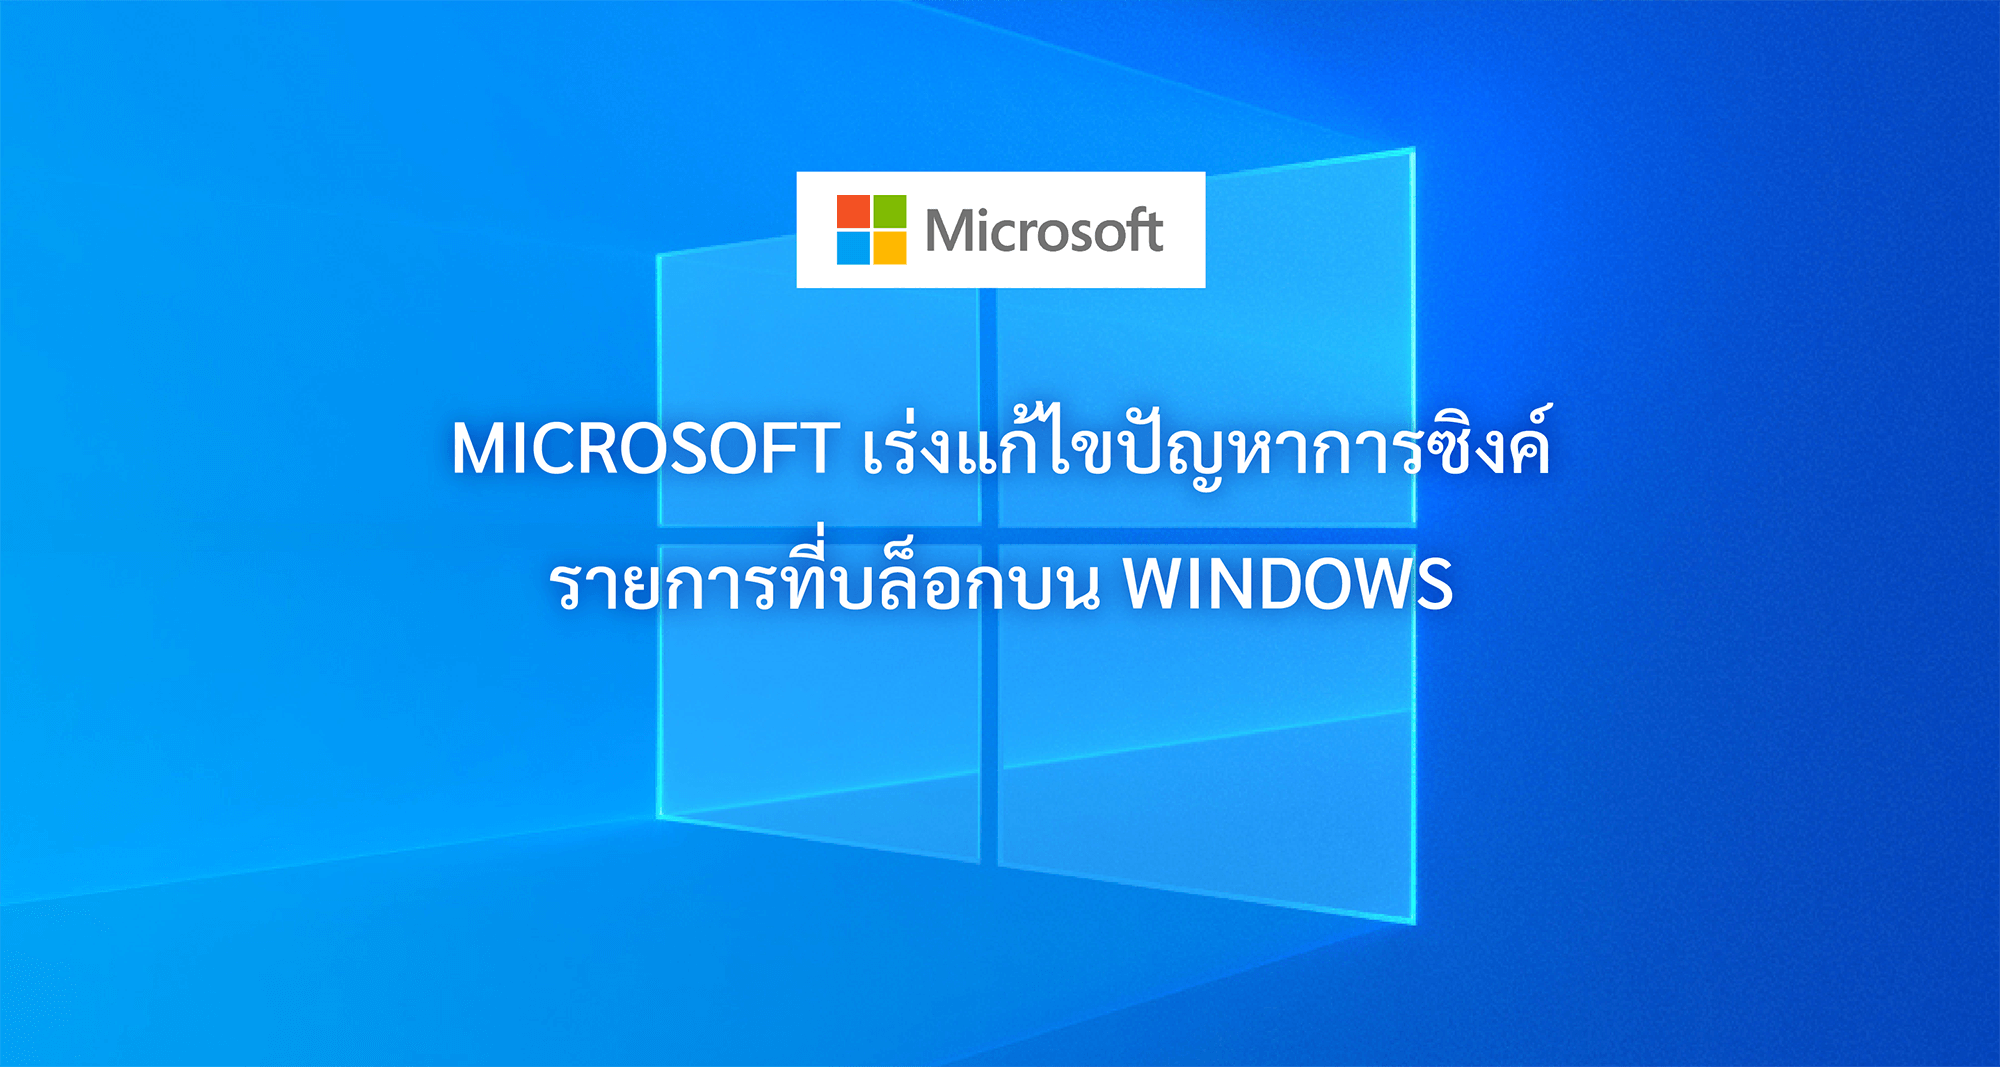 Microsoft เร่งแก้ไขปัญหาการซิงค์รายการที่บล็อกบน Windows